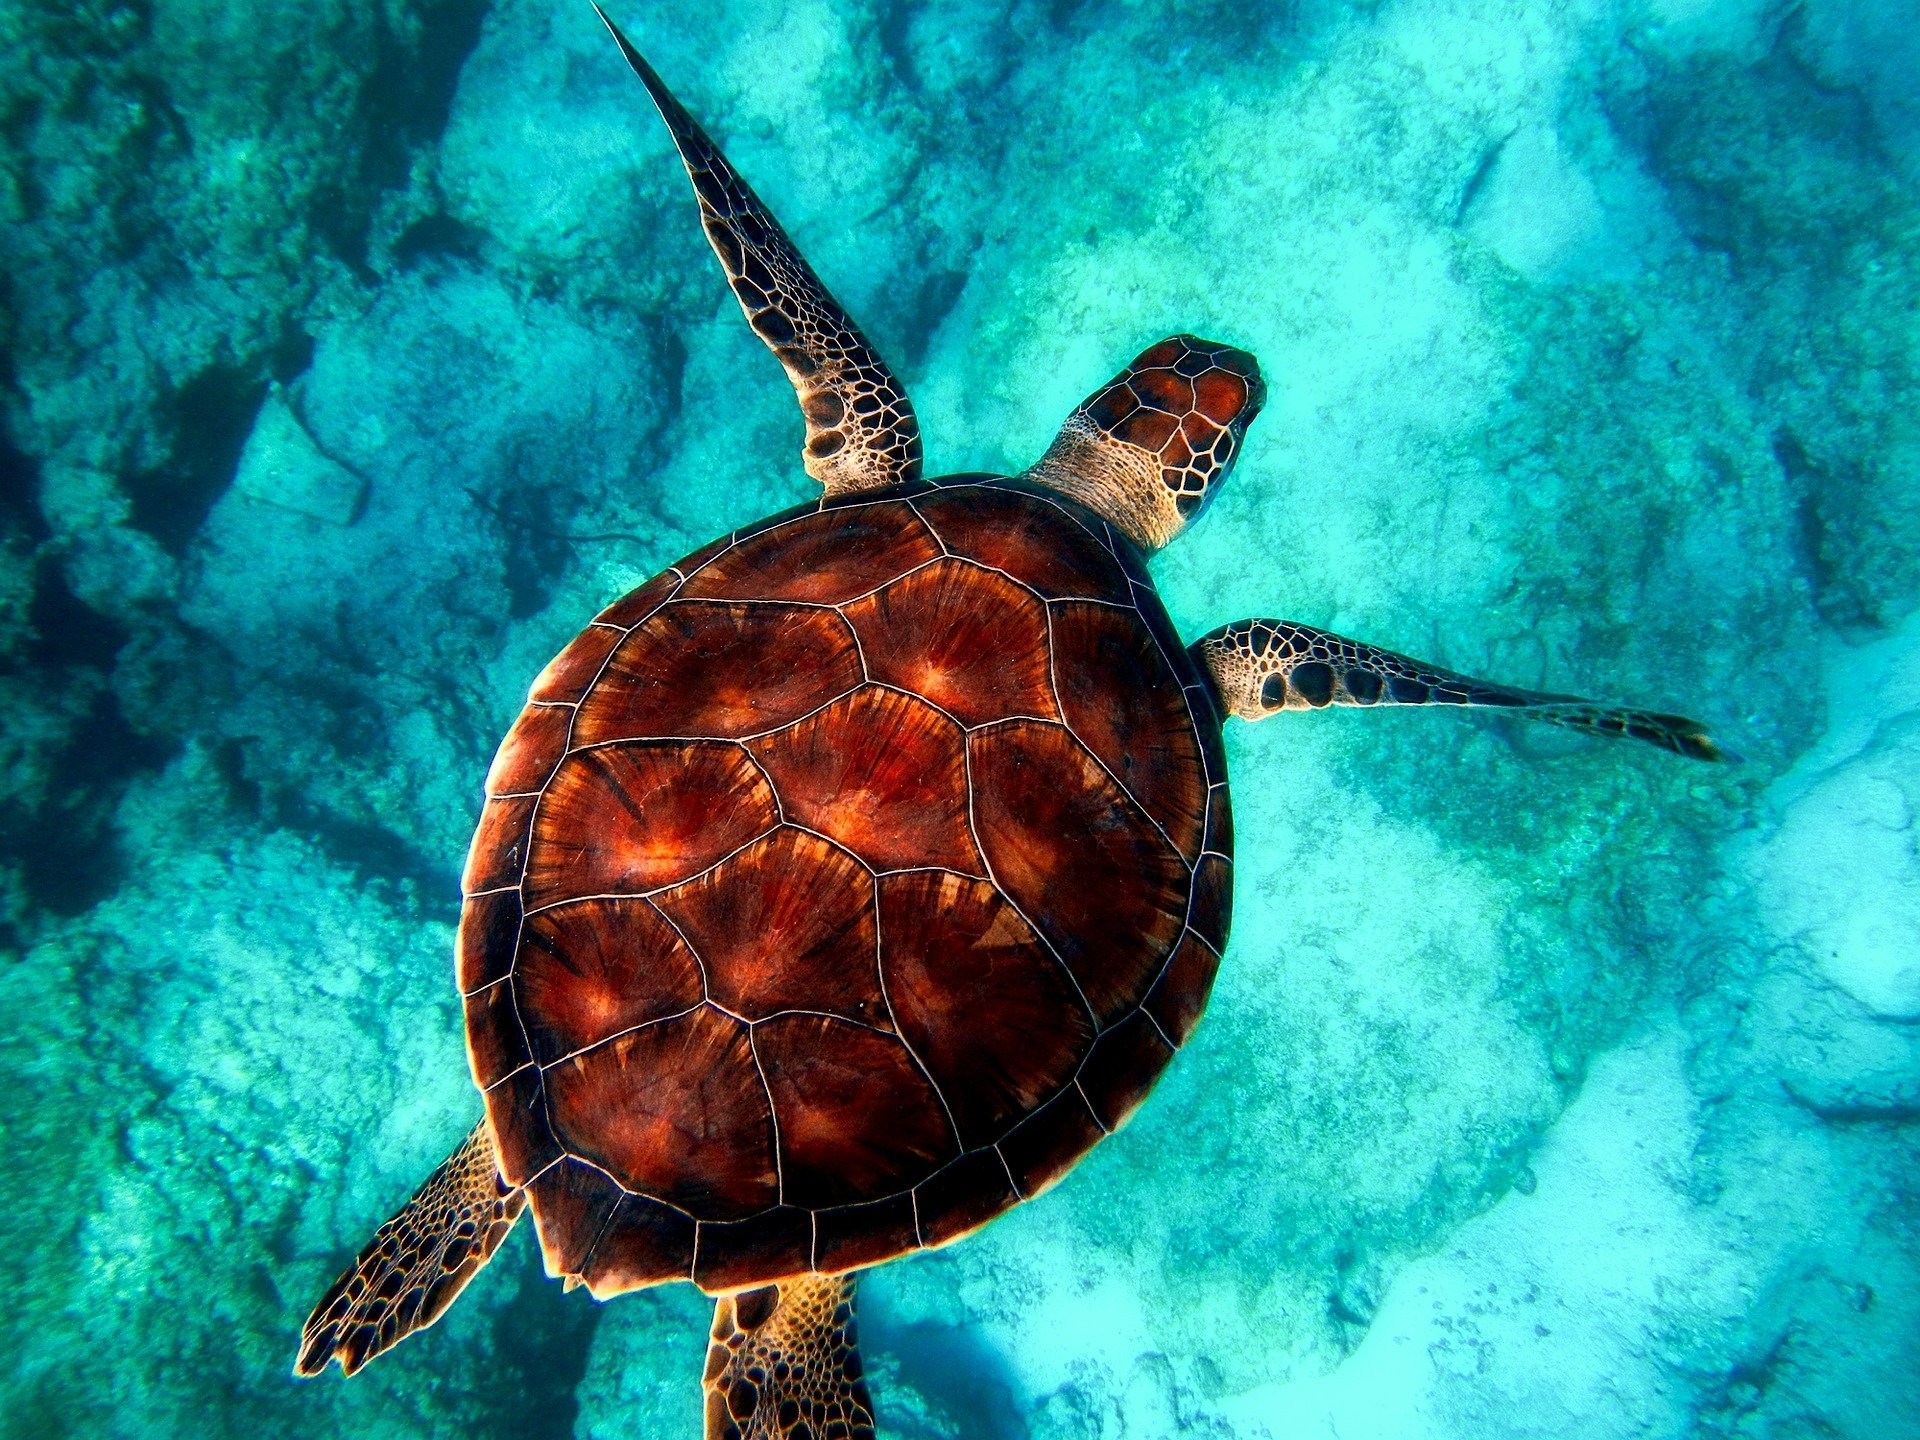 Țestoasele sunt în mare pericol! Plasticul din oceane creează o „cacpană evolutivă”